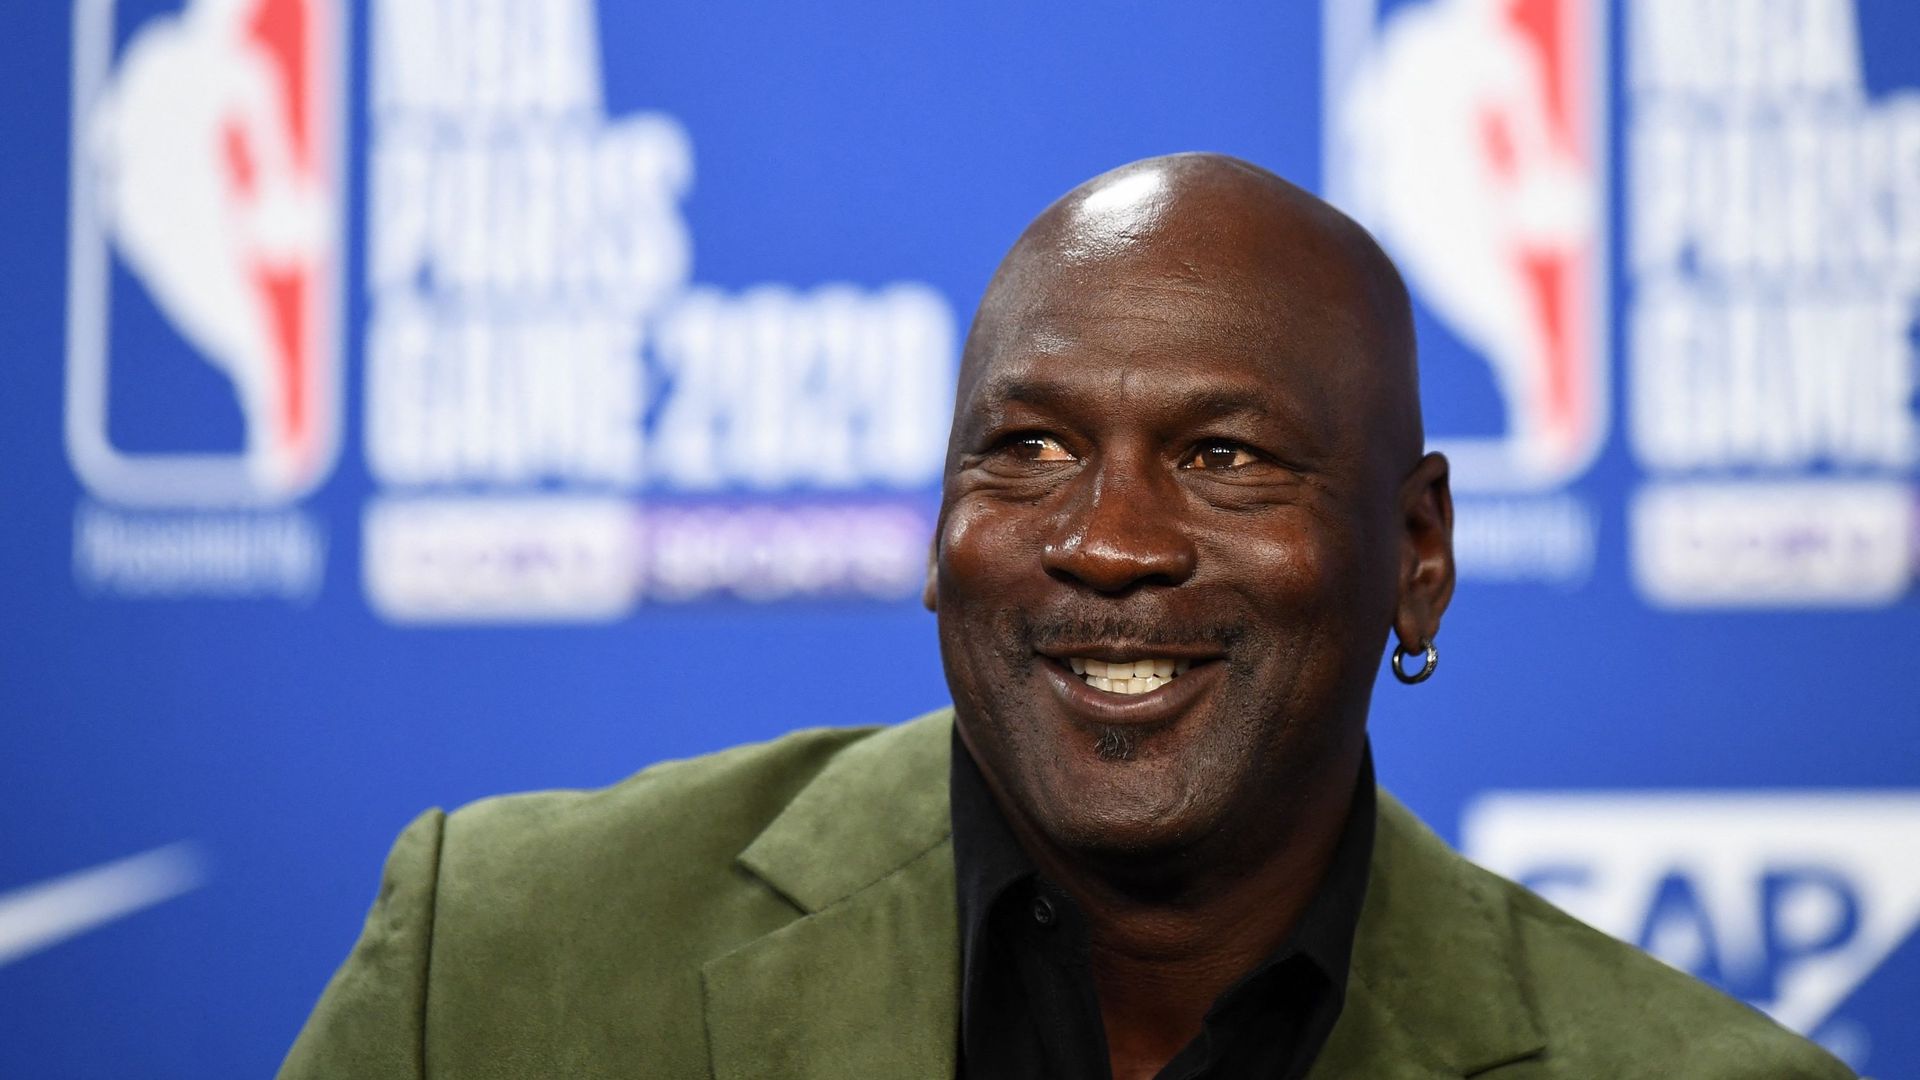 Pour fêter ses 60 ans, Michael Jordan a décidé d’être généreux.